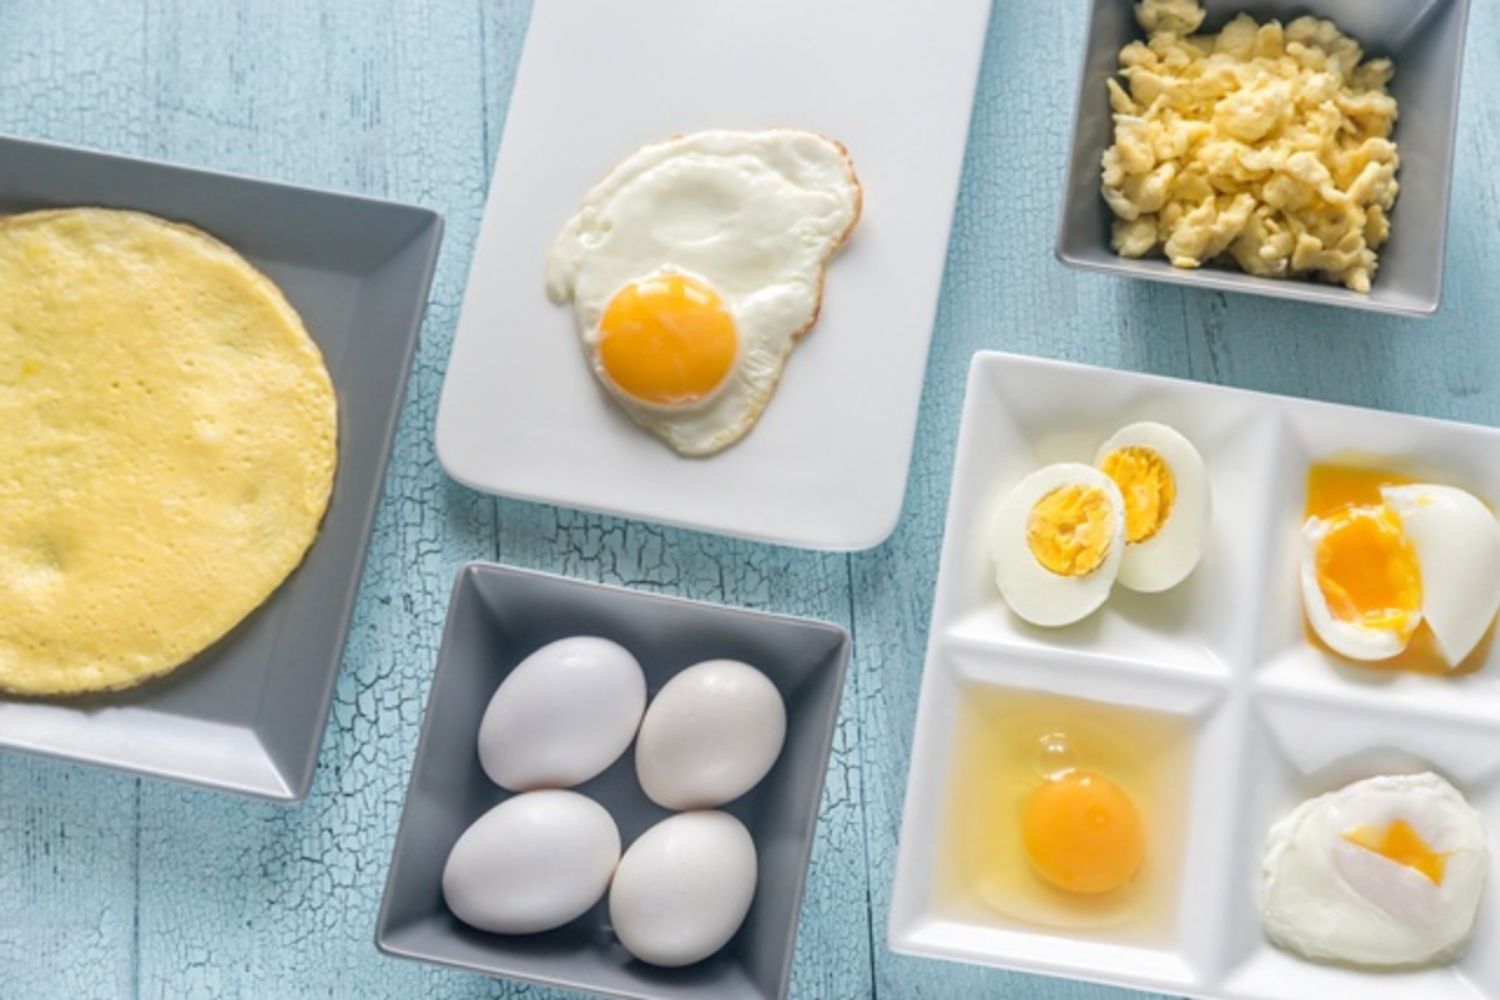 Hâm nóng trứng có an toàn không?